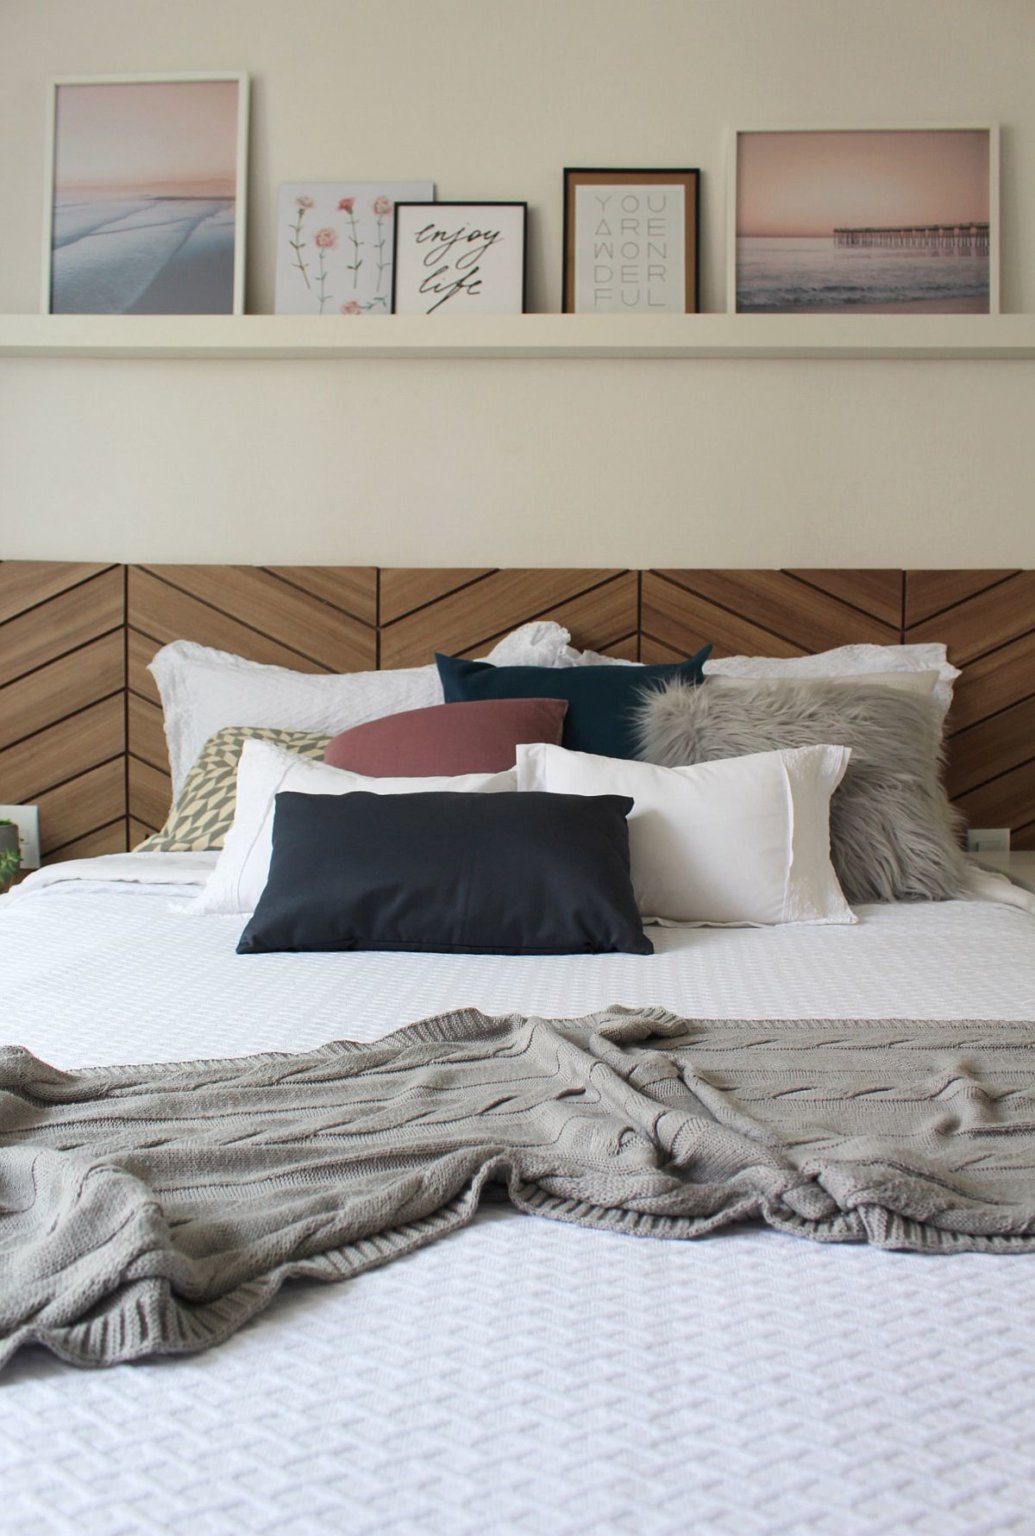 Tường đầu giường được decor tinh tế với kệ mở đặt bộ tranh cảnh biển hoàng hôn.